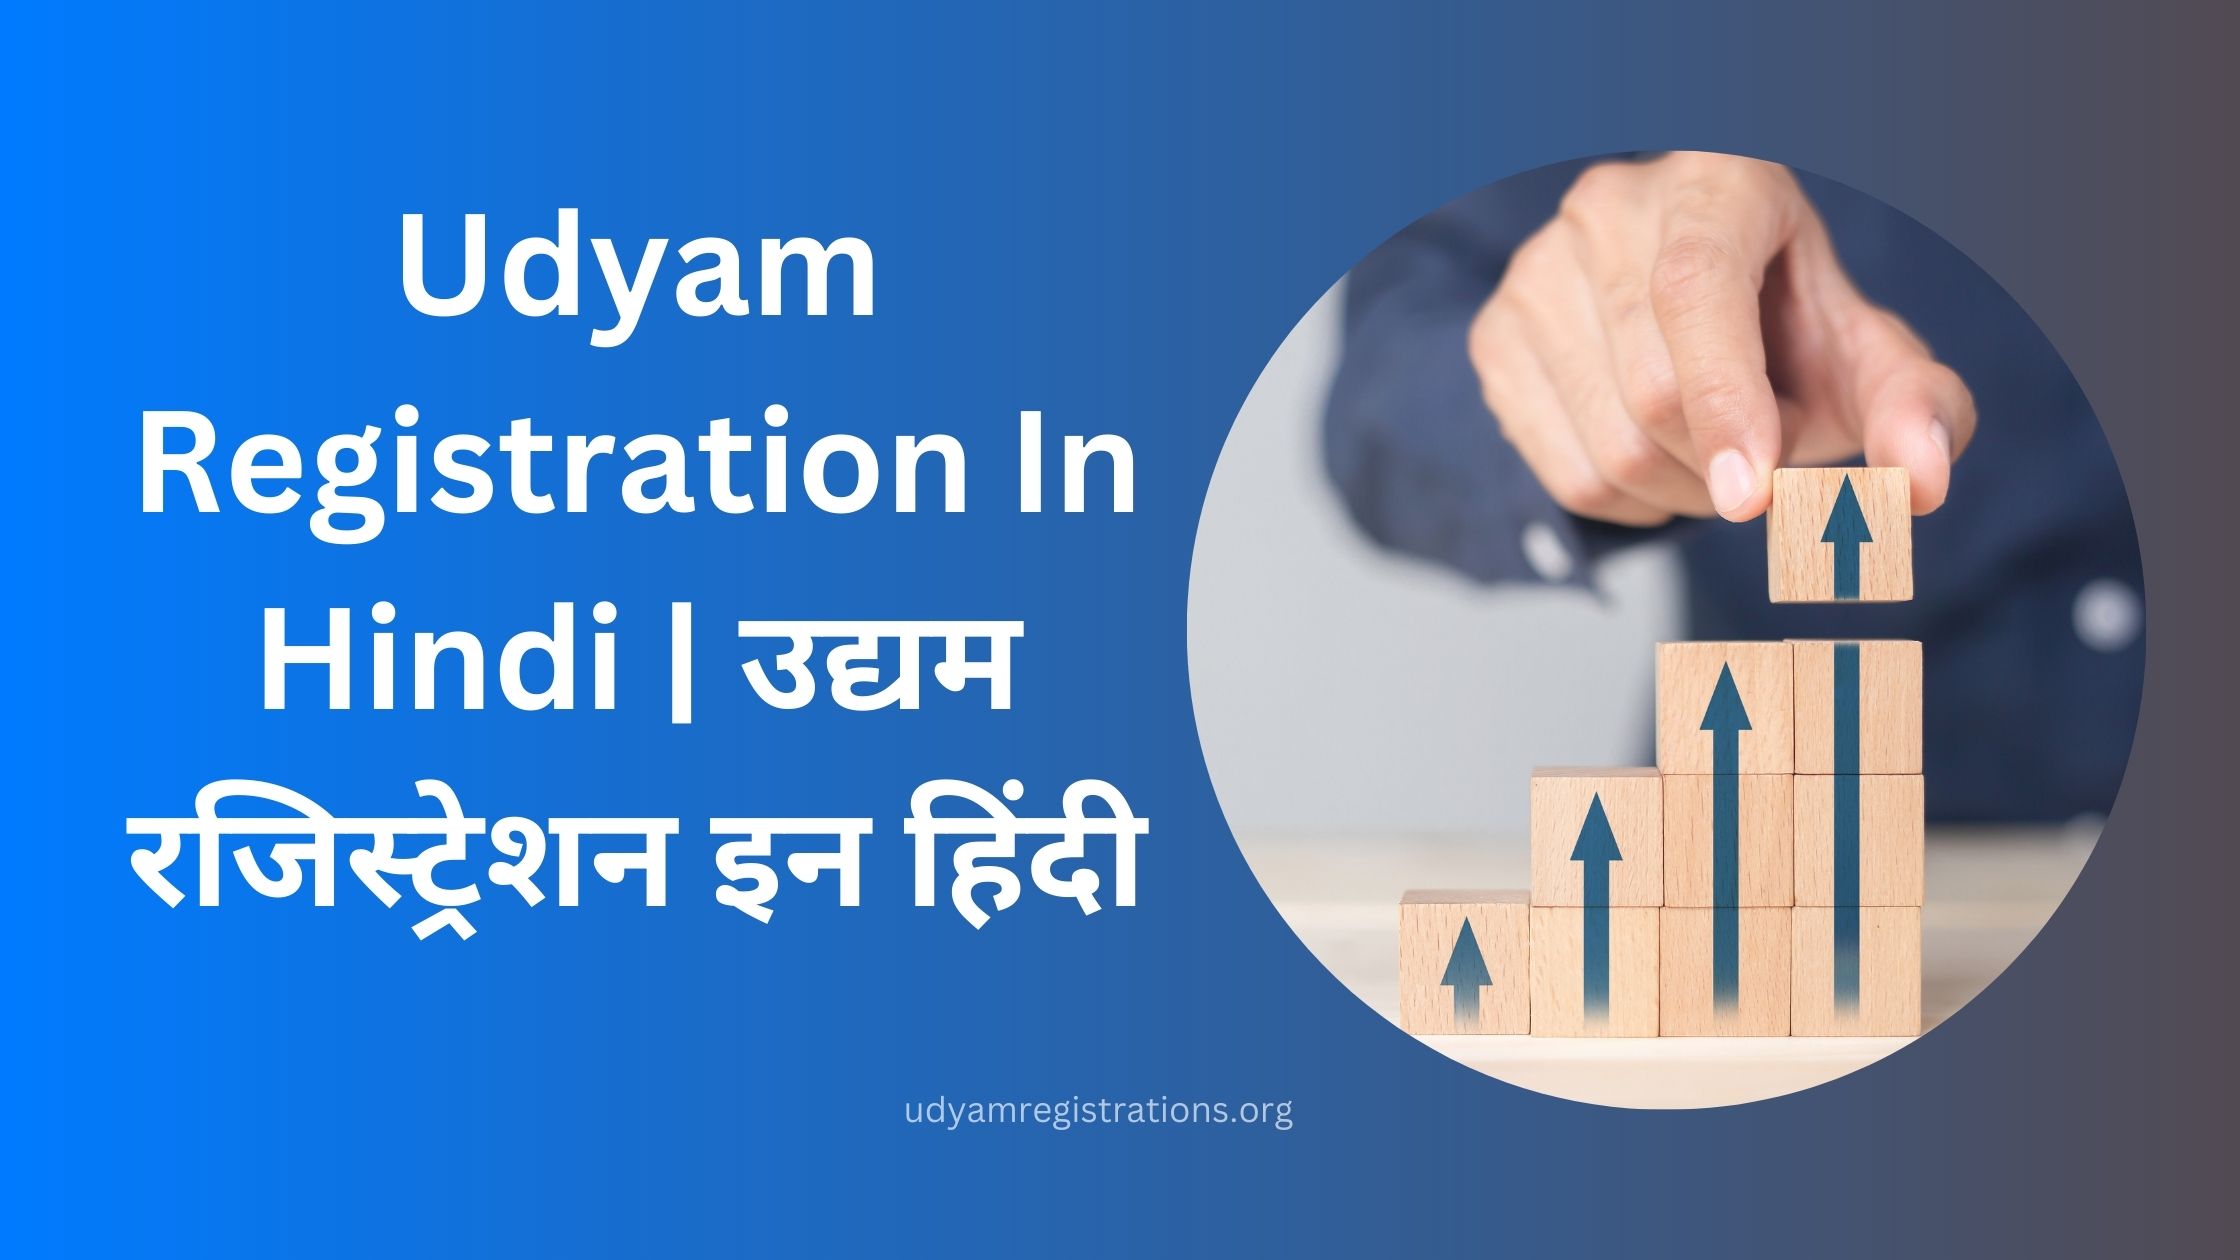 Udyam Registration In Hindi | जाने उद्यम रजिस्ट्रेशन इन हिंदी